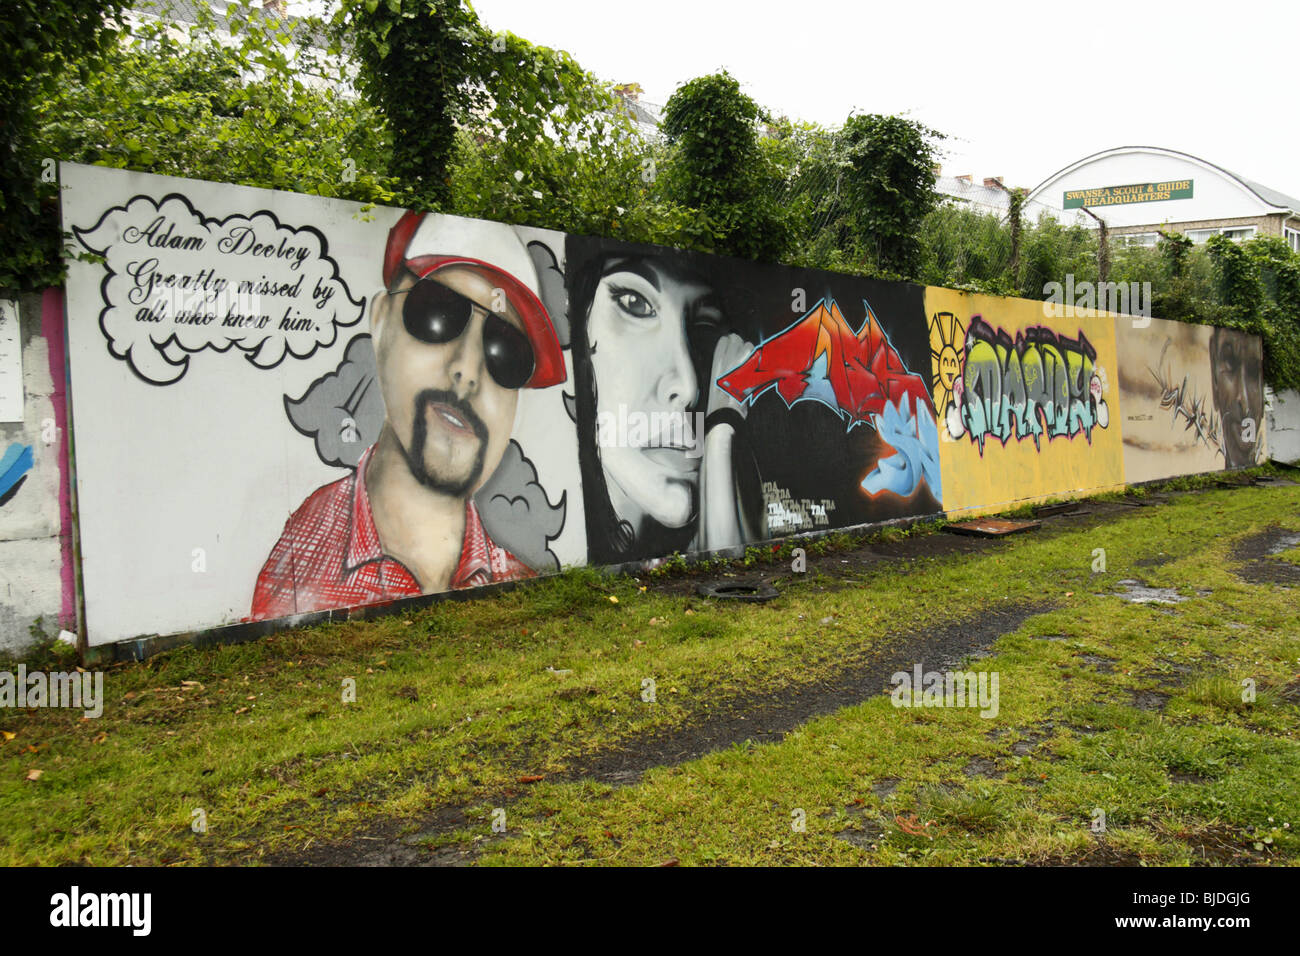 Arte graffiti en una pared de graffiti, Swansea, West Glamorgan, al sur de Gales, Reino Unido. Foto de stock